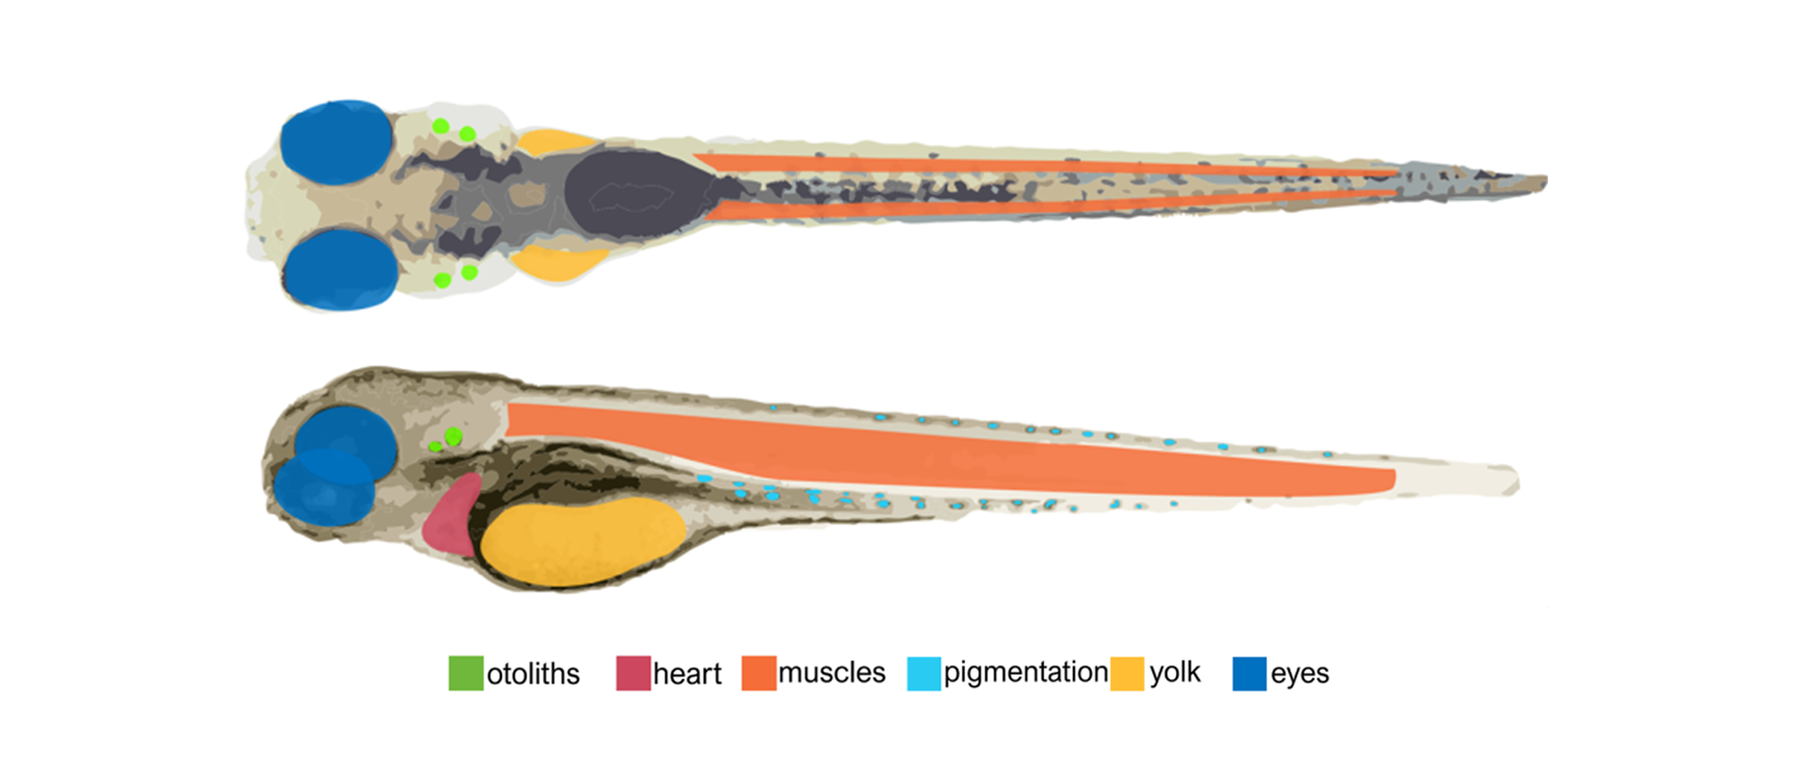 斑马鱼在短波红外波段血管成像作为心血管系统发育长期研究的工具